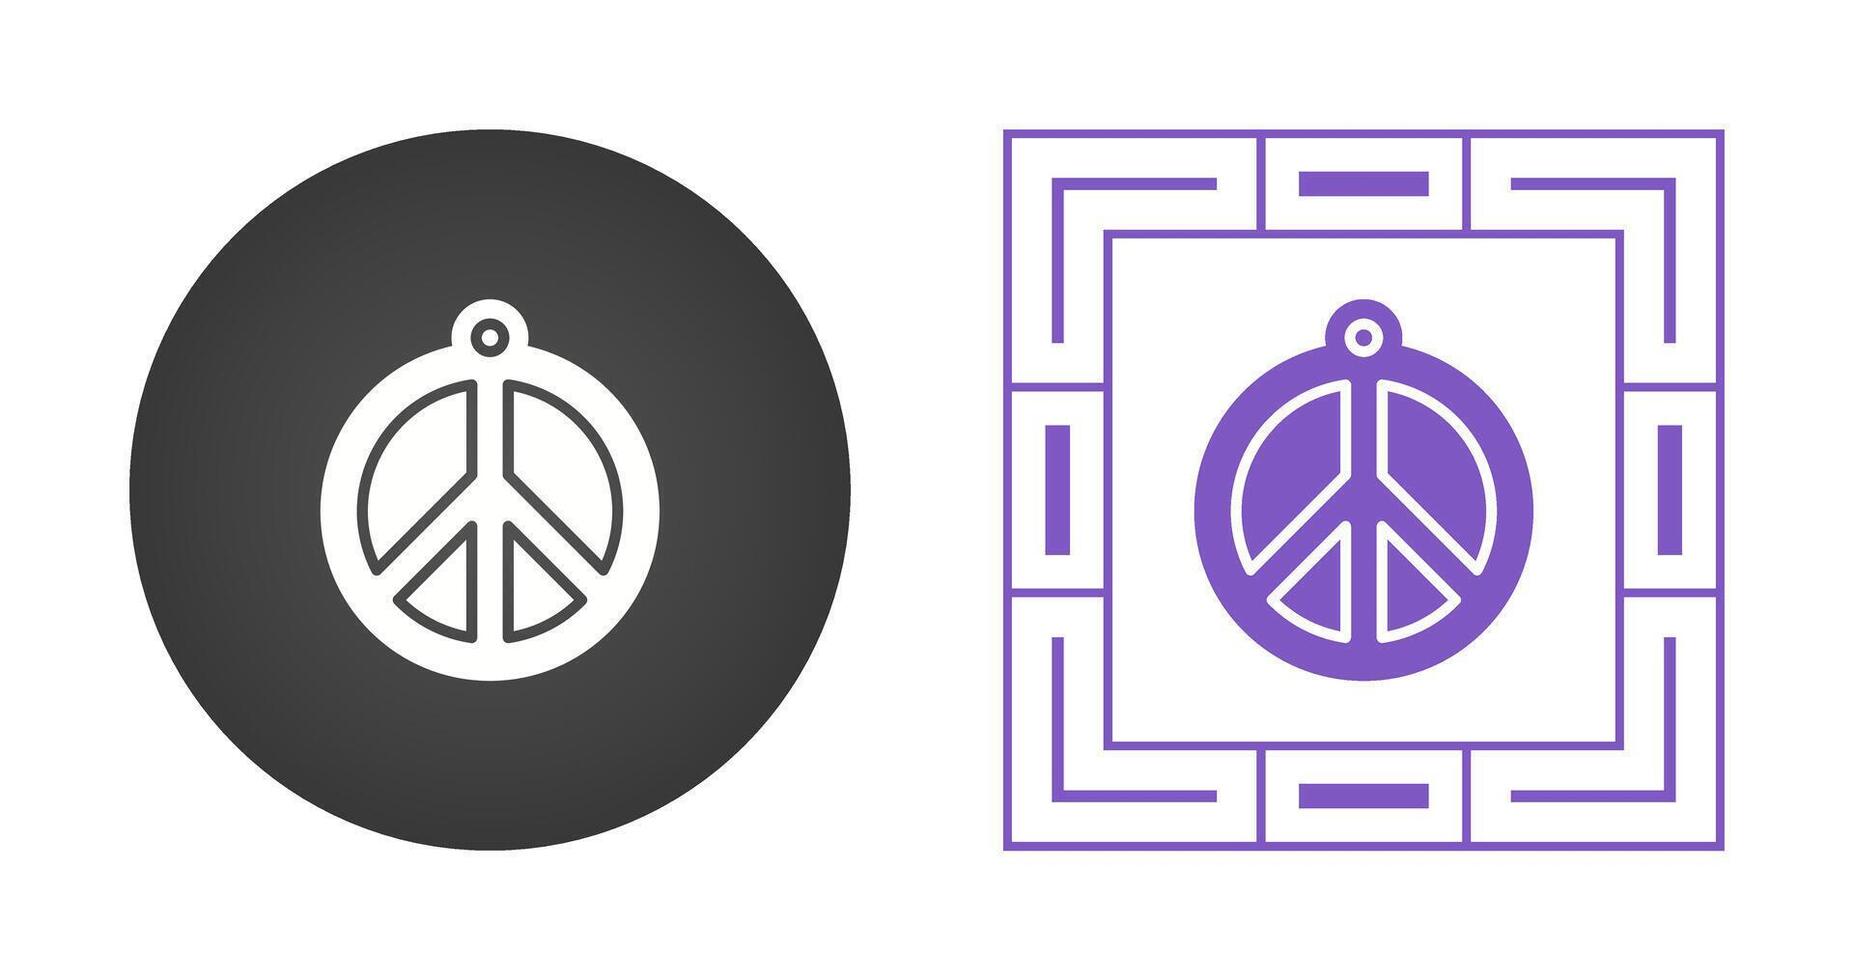 paix symbole vecteur icône